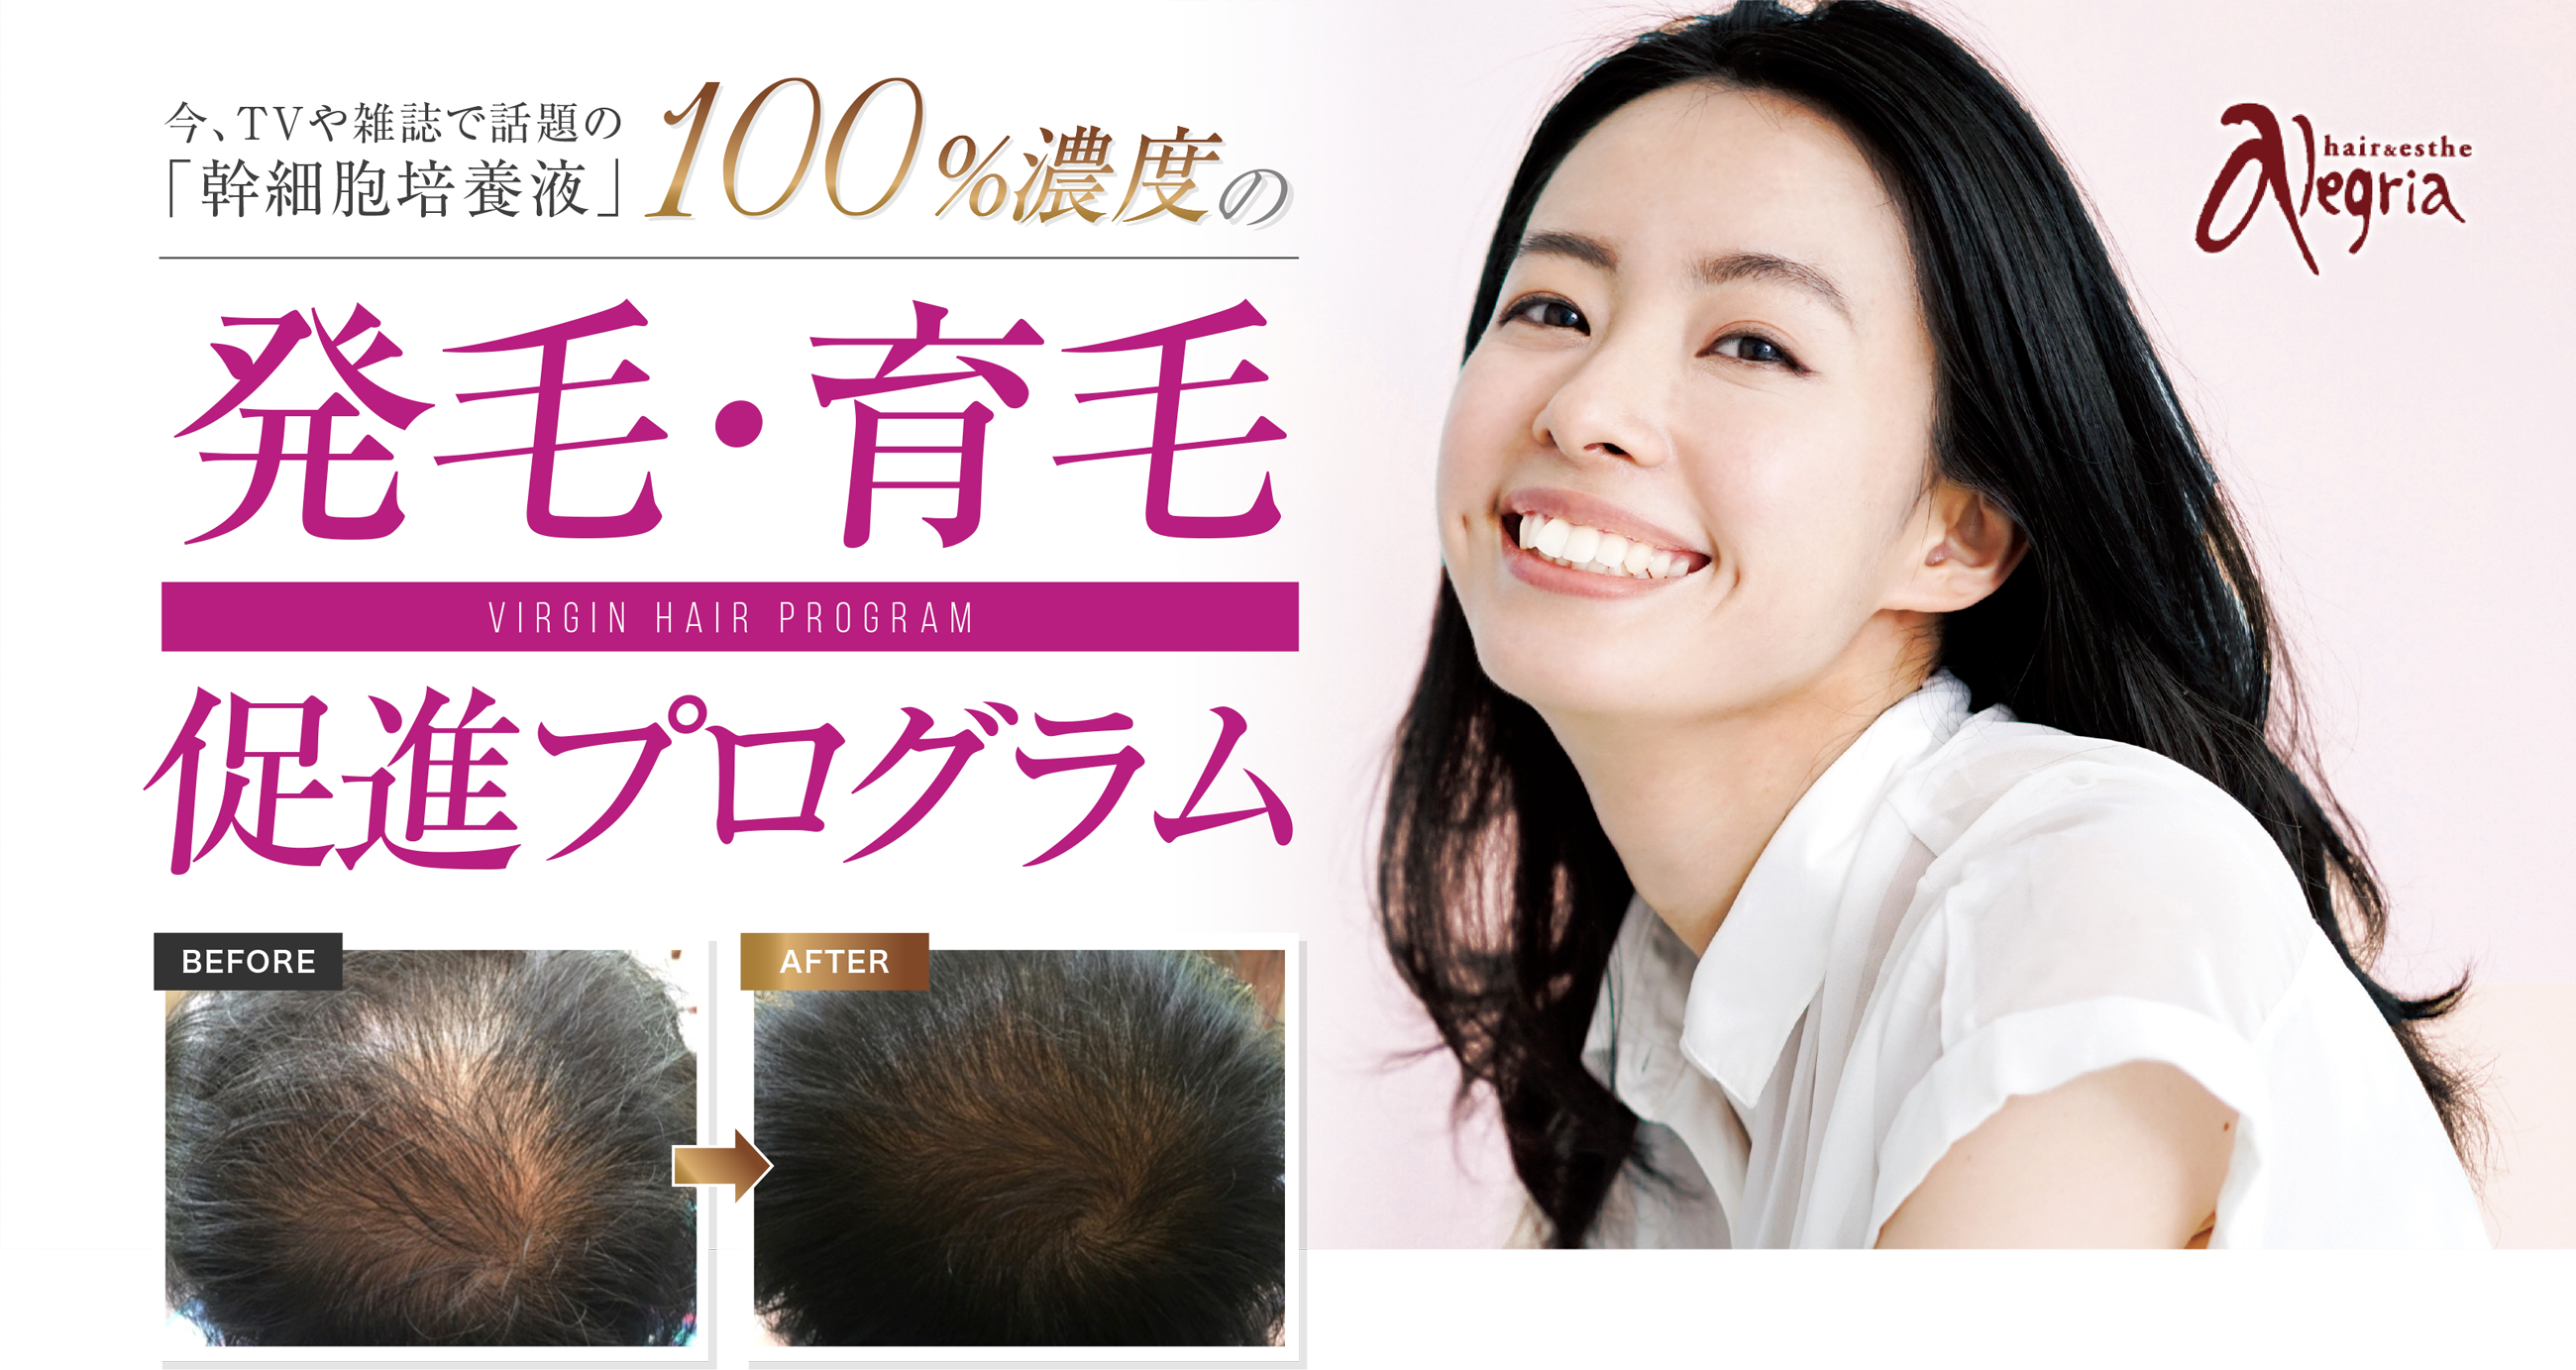 今TVや雑誌で話題の「幹細胞培養液」100%濃度の発毛・育毛促進プログラム